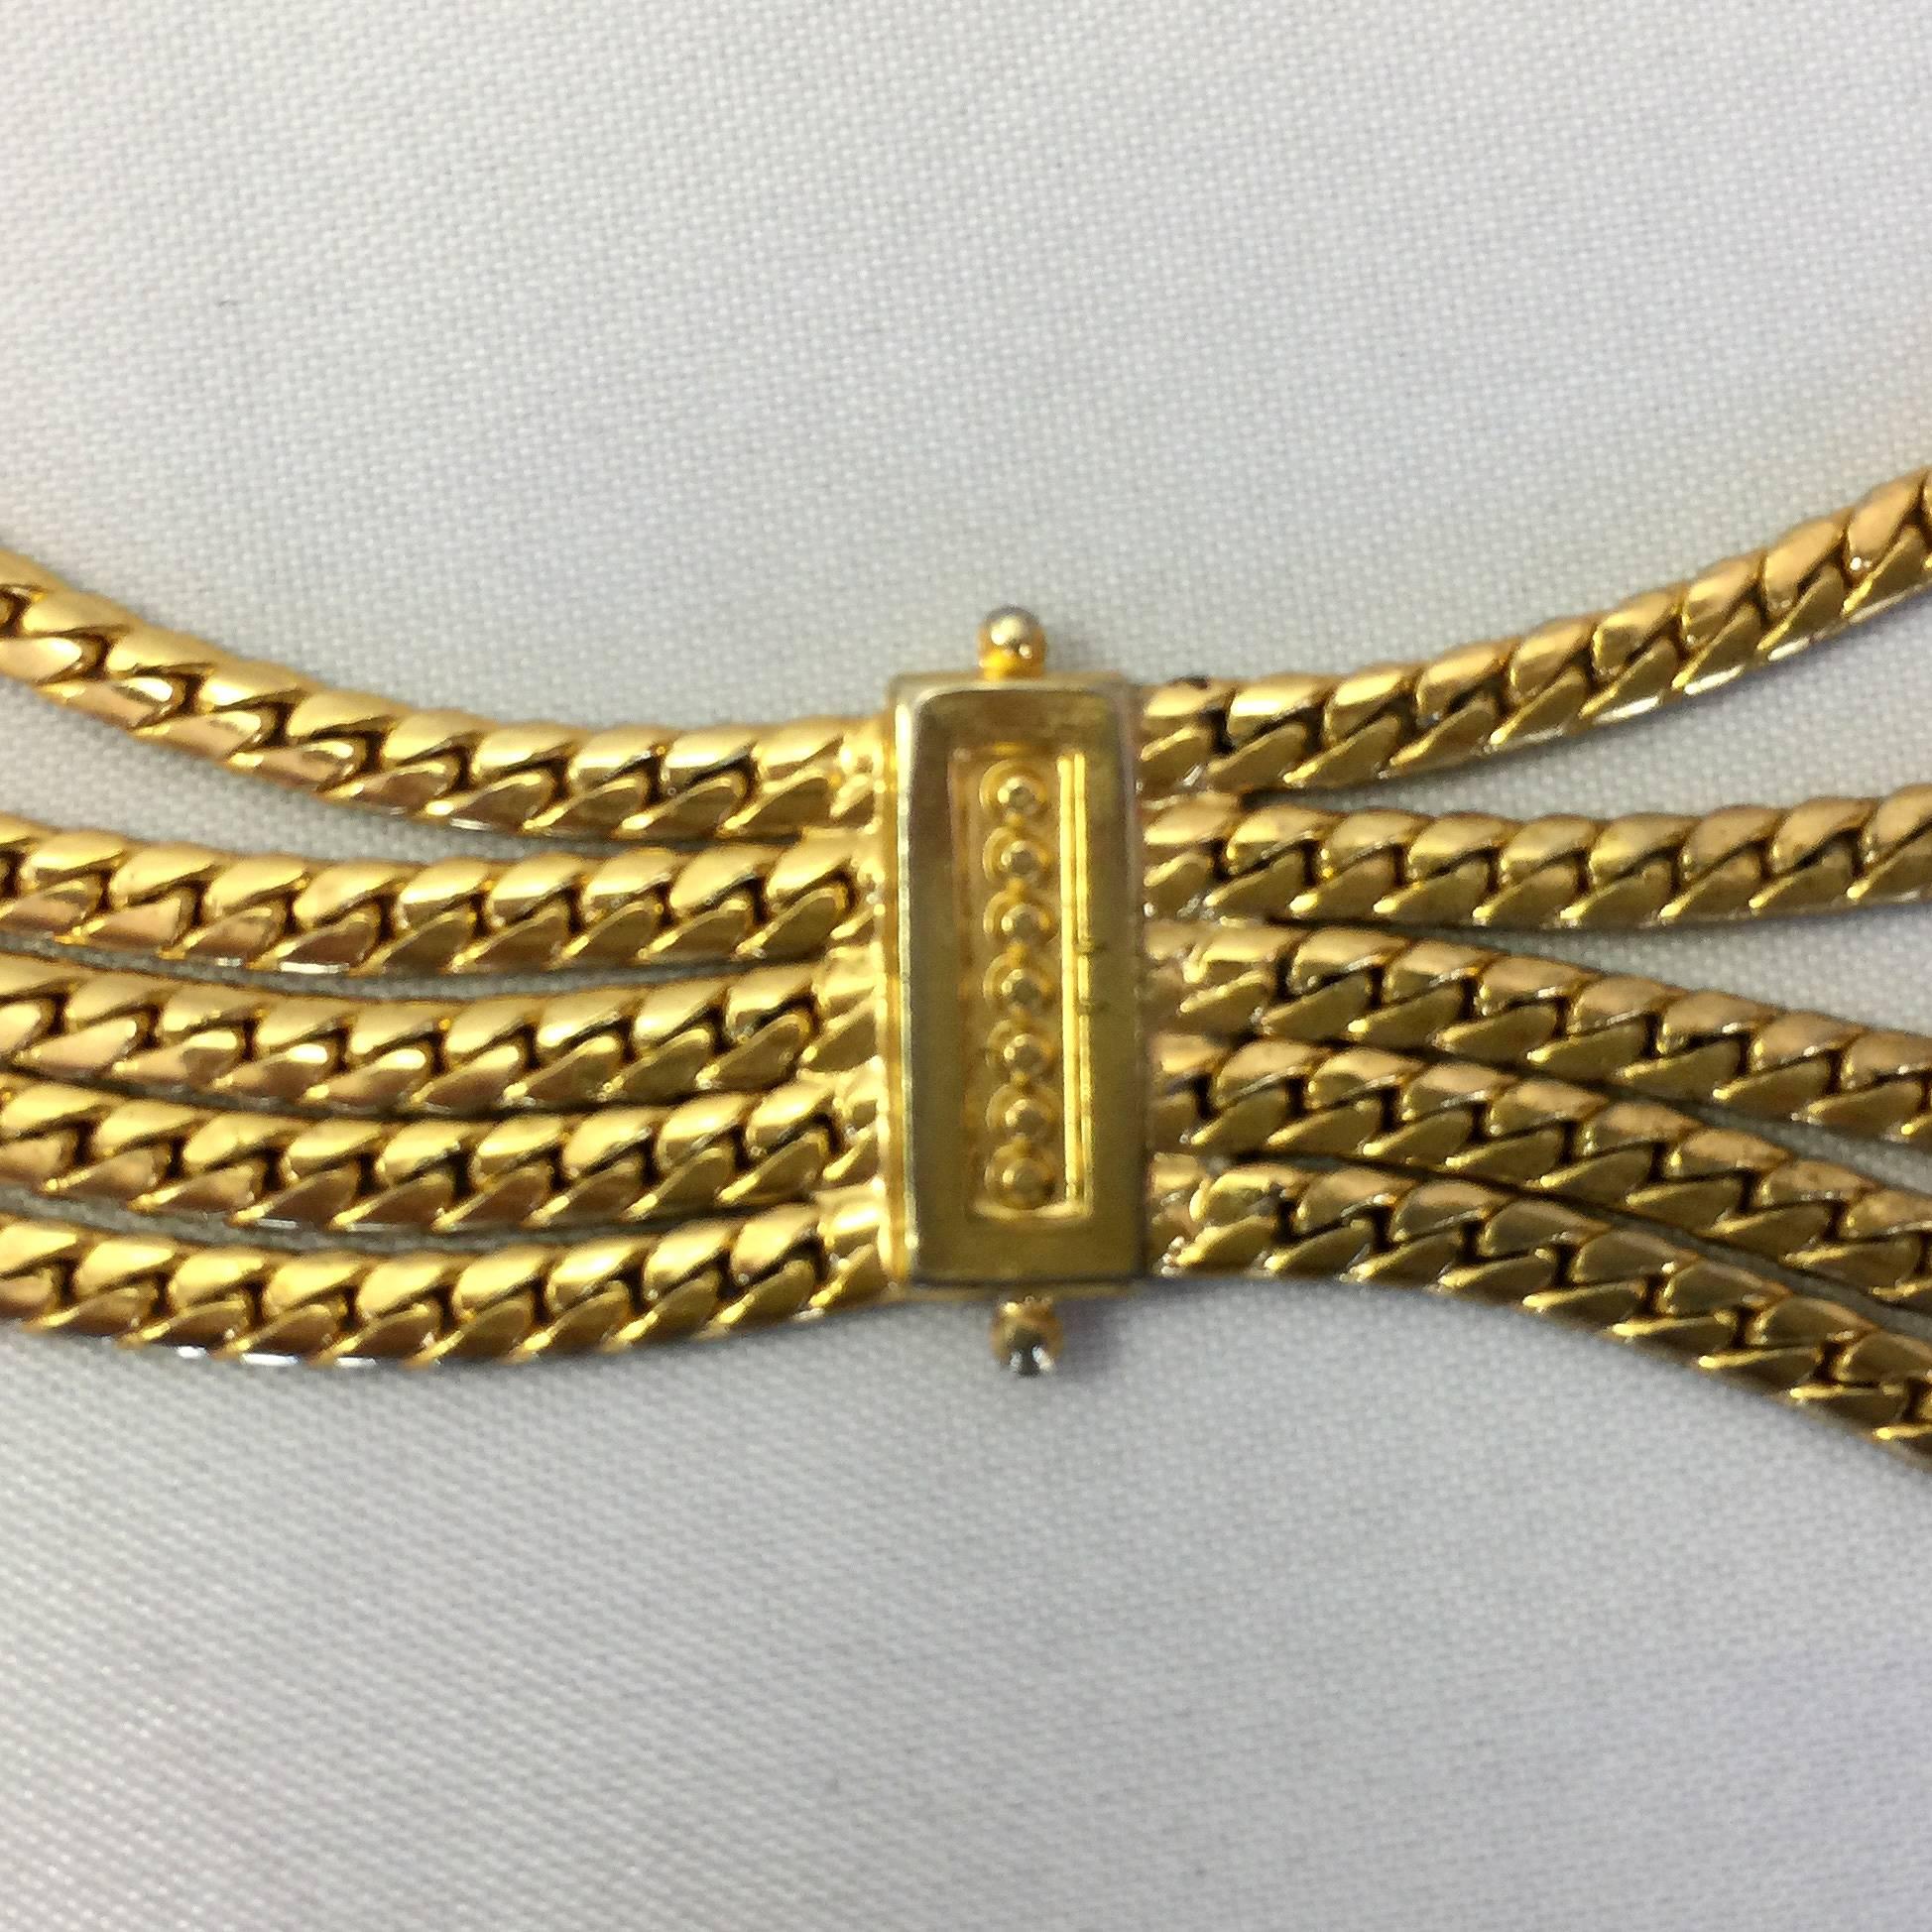 Christian Dior mehrreihiger goldfarbener Seilkettengürtel mit geometrischen Akzenten. 

Unterschrieben: Christian Dior

Messungen:
1